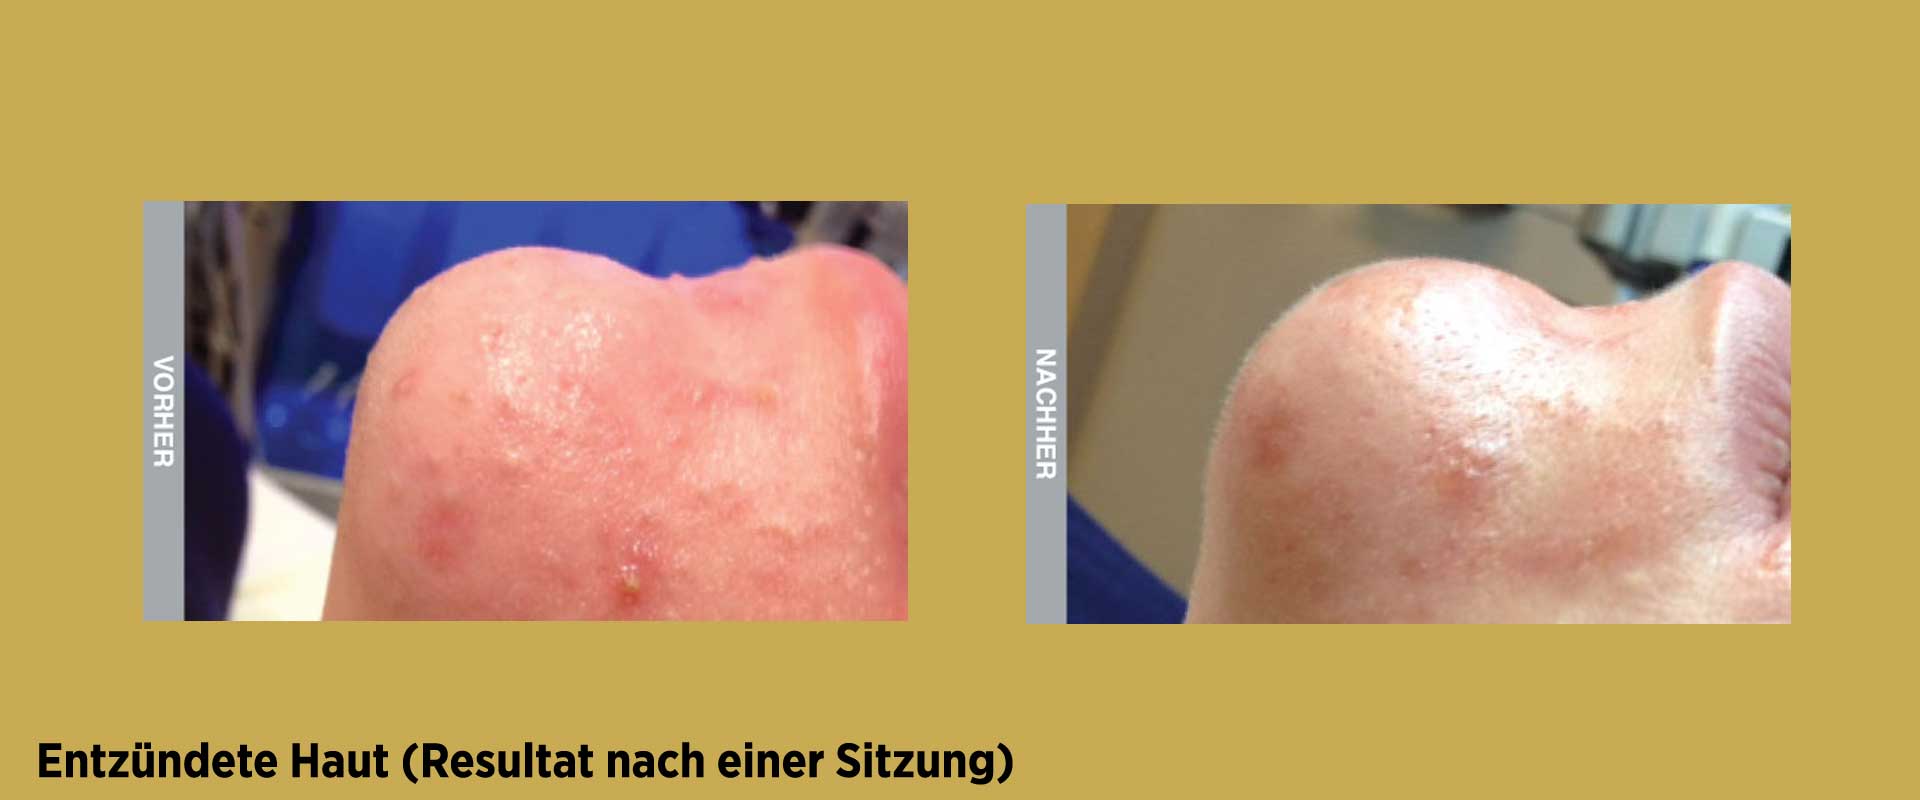 Vorher / Nachher Behandlung gegen entzündete Haut mit HydraFacial